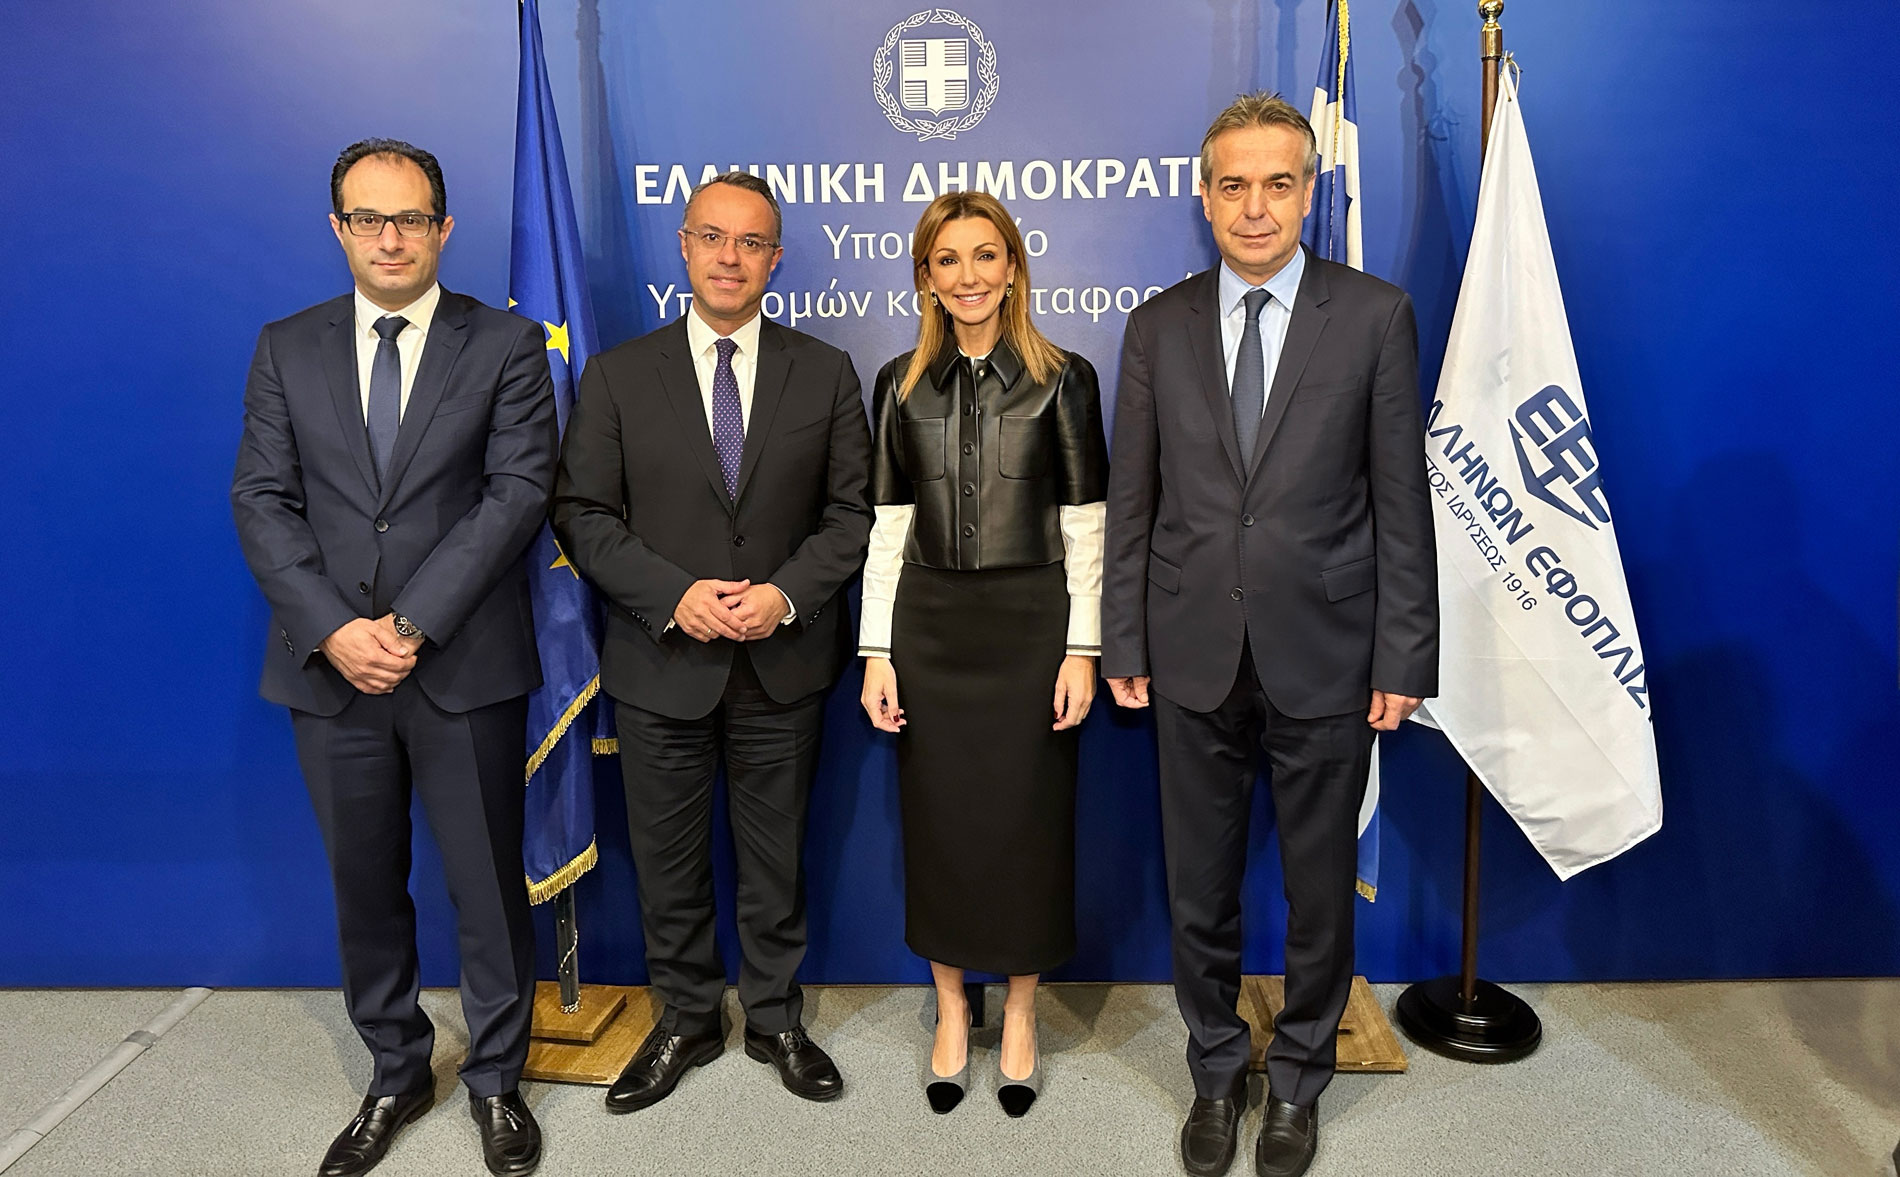 Στις φωτογραφίες εκ μέρους της Ένωσης Ελλήνων Εφοπλιστών, εκτός από τη Μελίνα Τραυλού, απεικονίζονται επίσης ο Αντιπρόεδρος του ΔΣ της ΕΕΕ, Μιχάλης Χανδρής και ο Ταμίας του ΔΣ της ΕΕΕ, Γιάννης Ξυλάς